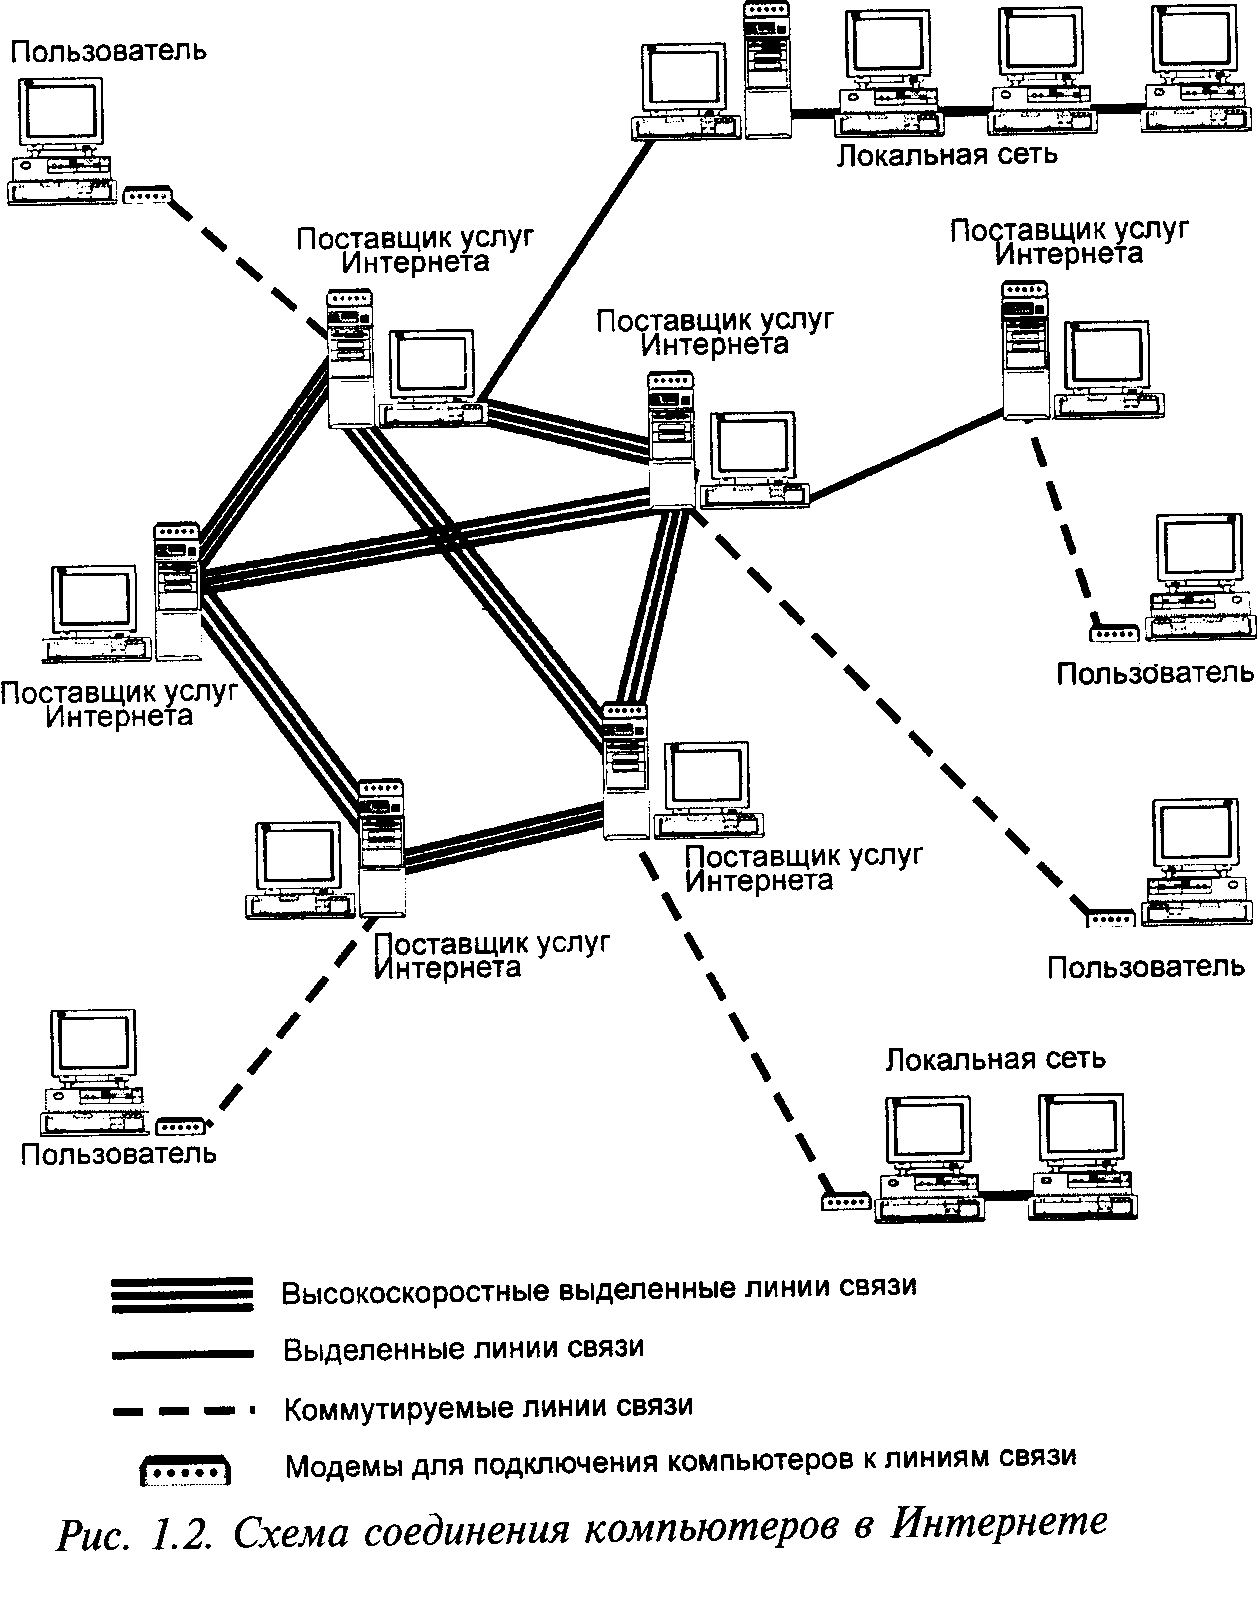 Сетевые привязки. Схема локальной сети организации интернет провайдера. Структурная схема подключения к локальной сети. Схема соединения 3 локальной сети. Принципиальные схемы сетей связи.